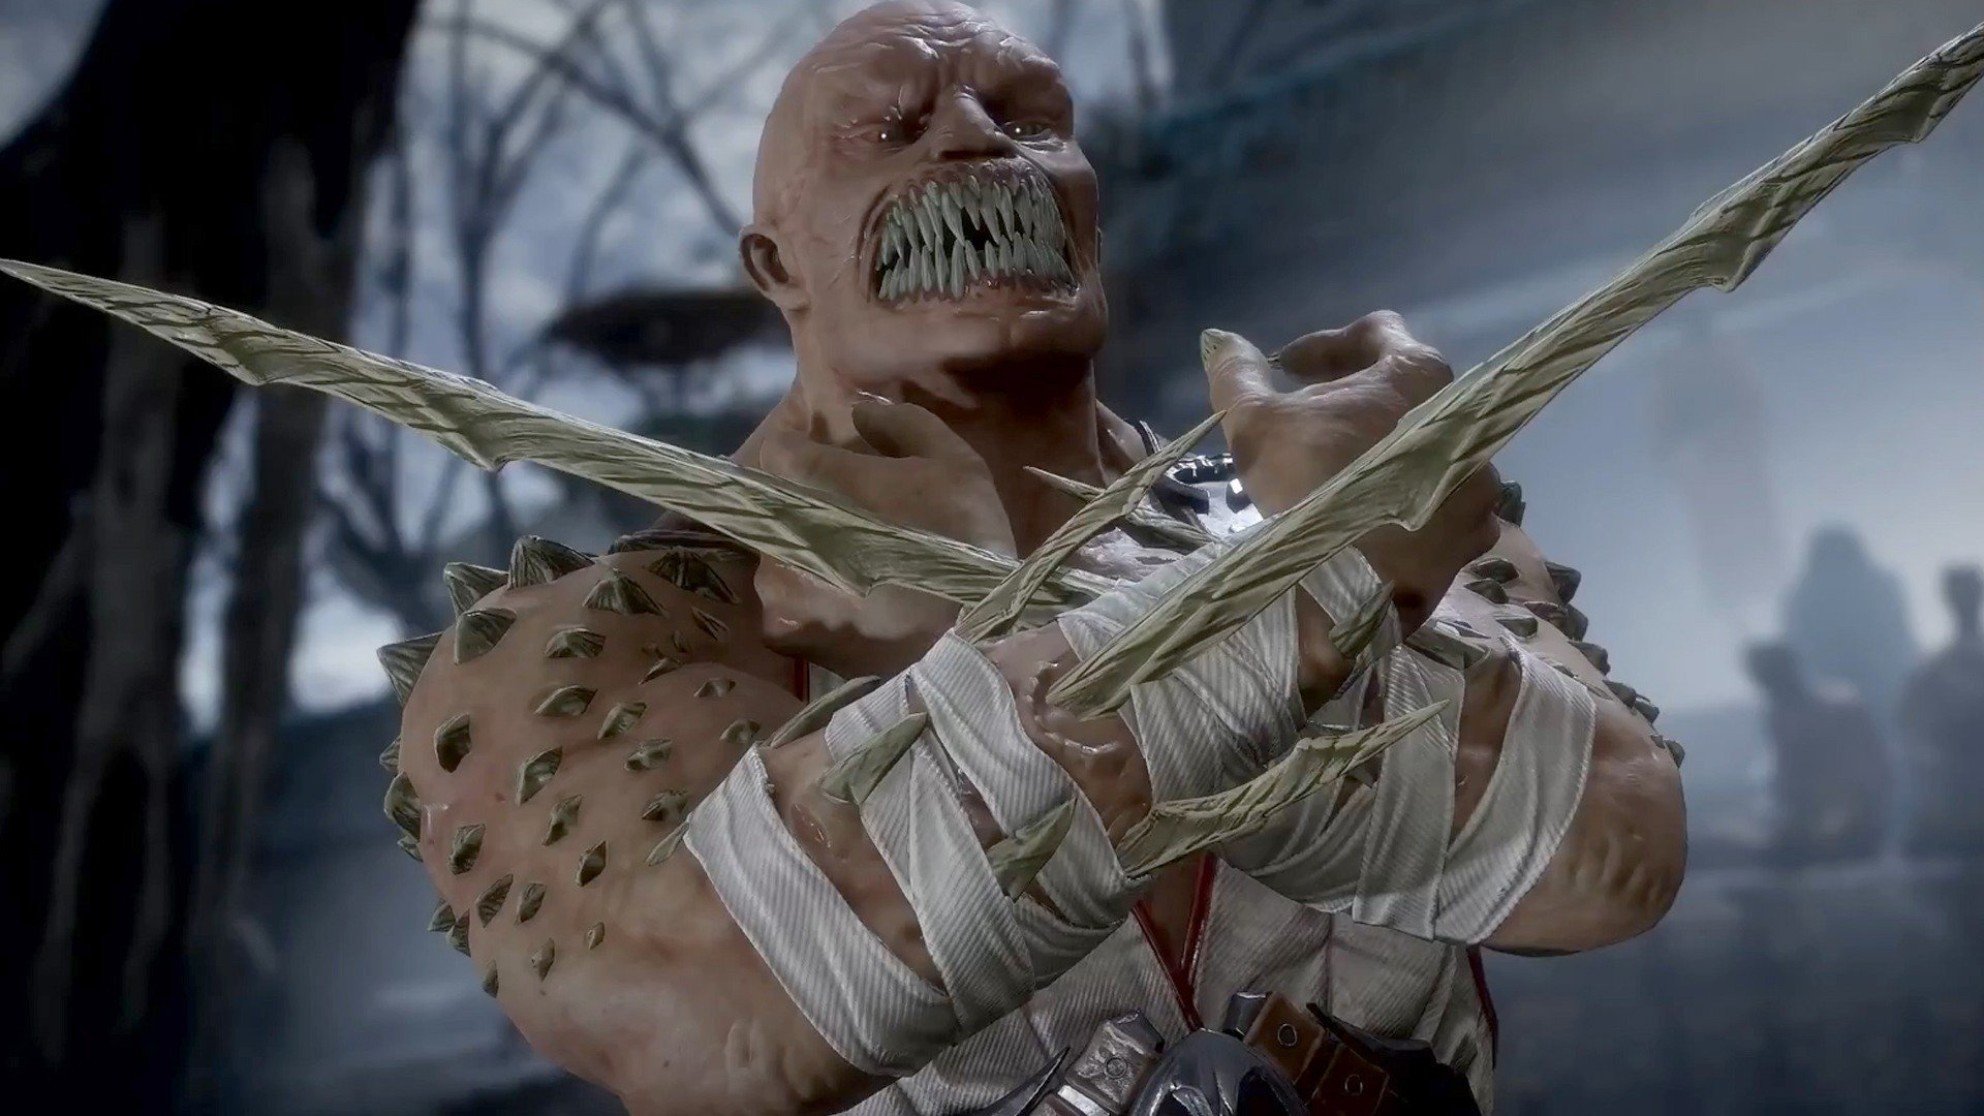 Раскрыты злодеи фильма Mortal Kombat 2 («Мортал Комбат 2») - известные персонажи